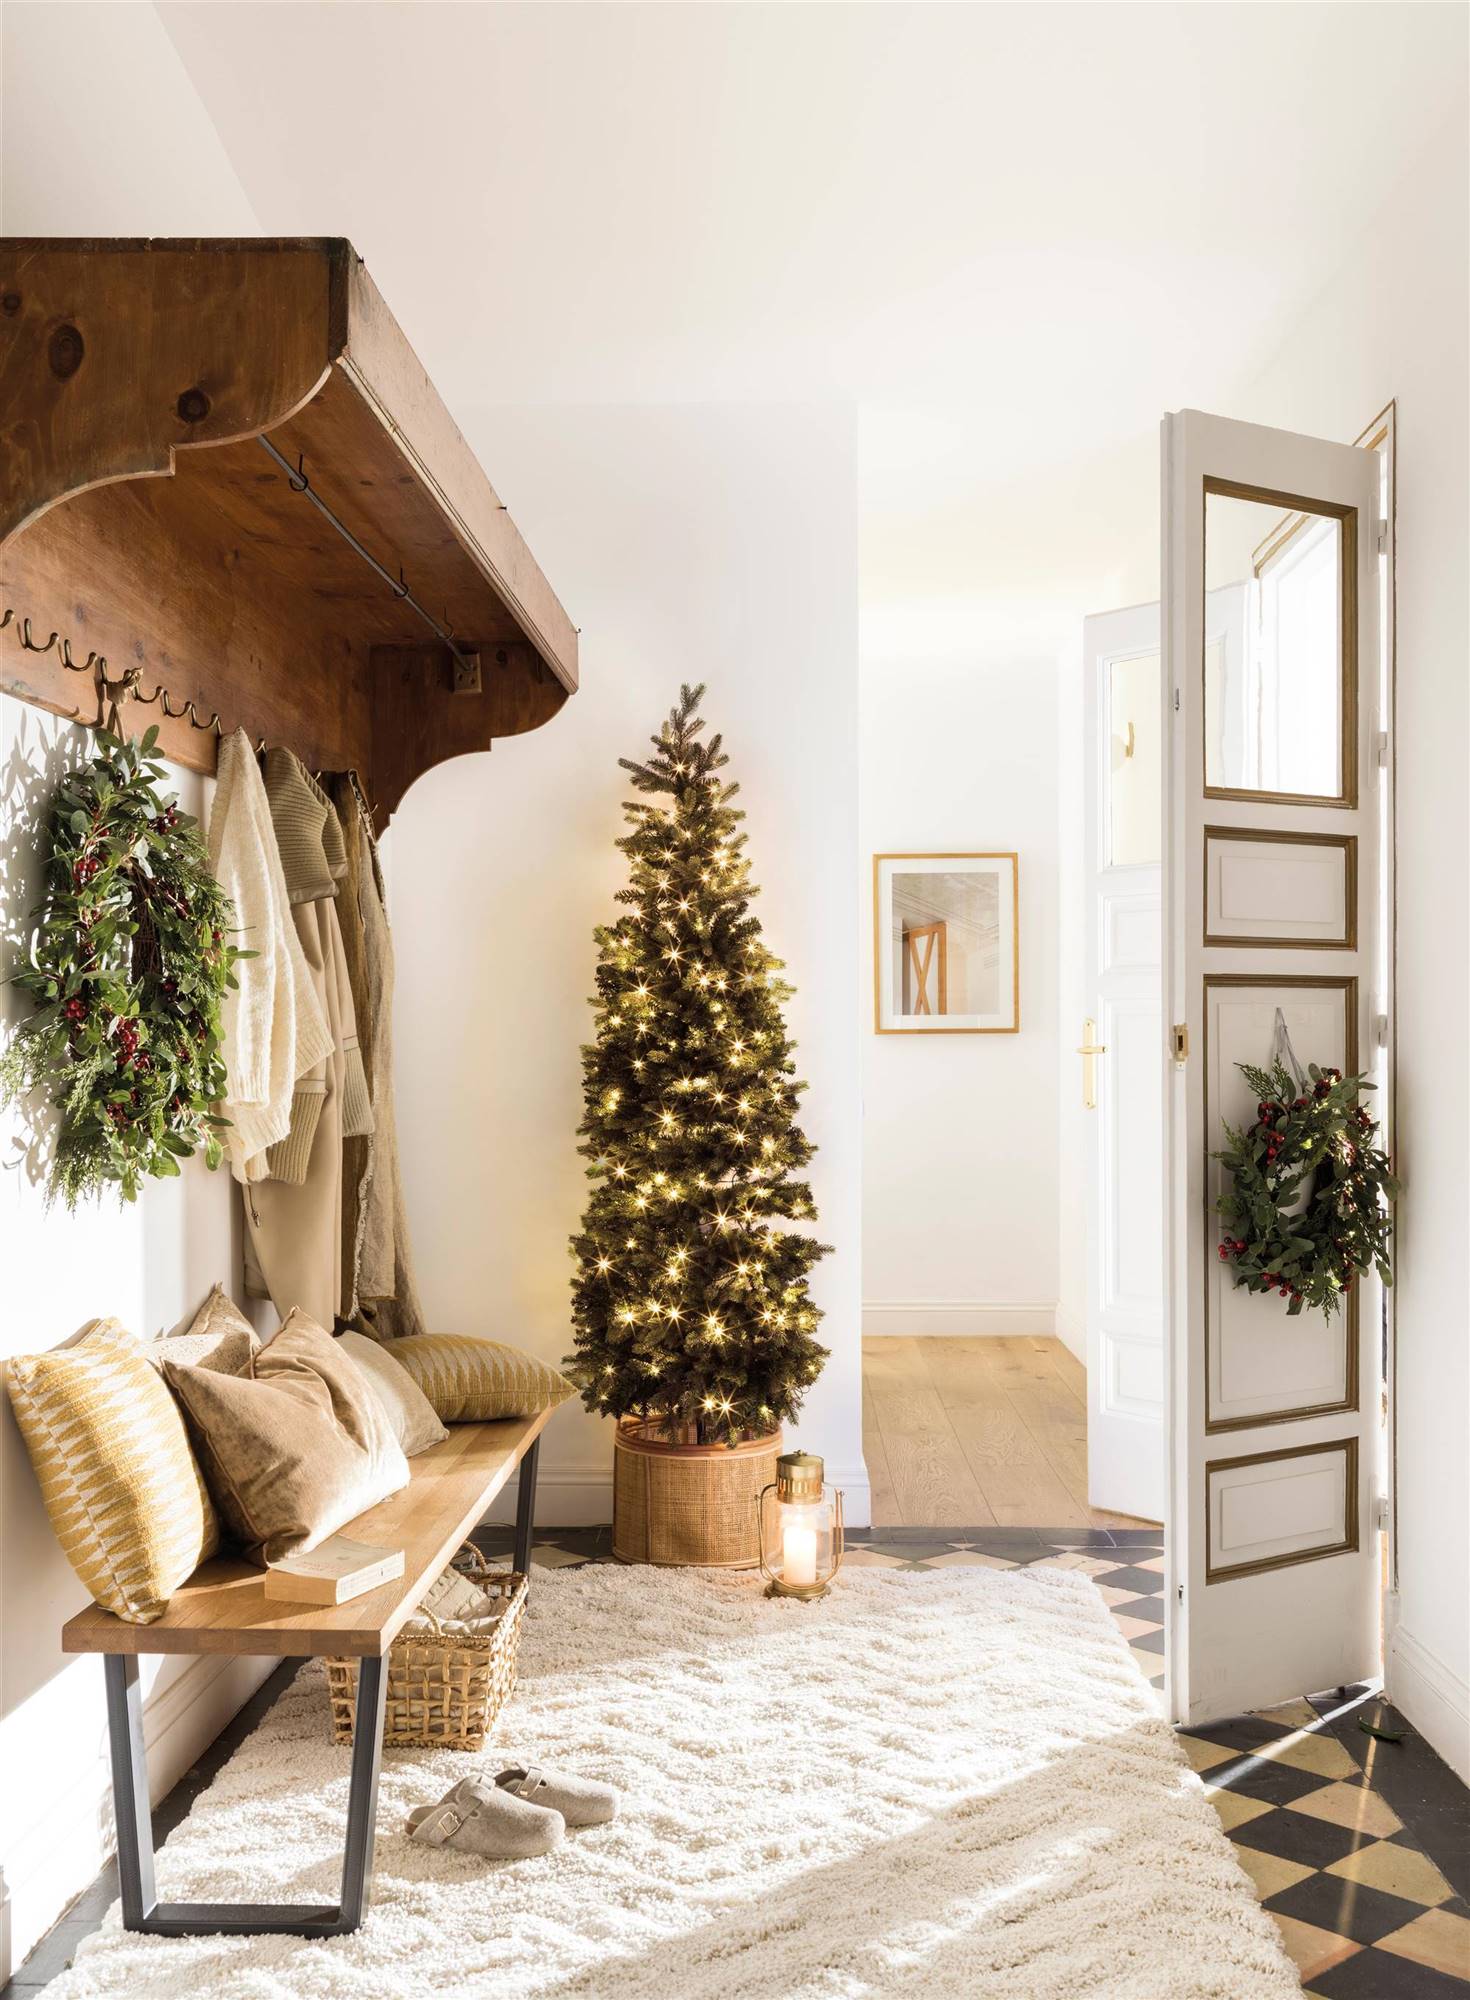 Recibidor clásico con alfombra blanca, banco de madera y Árbol de Navidad decorado.  